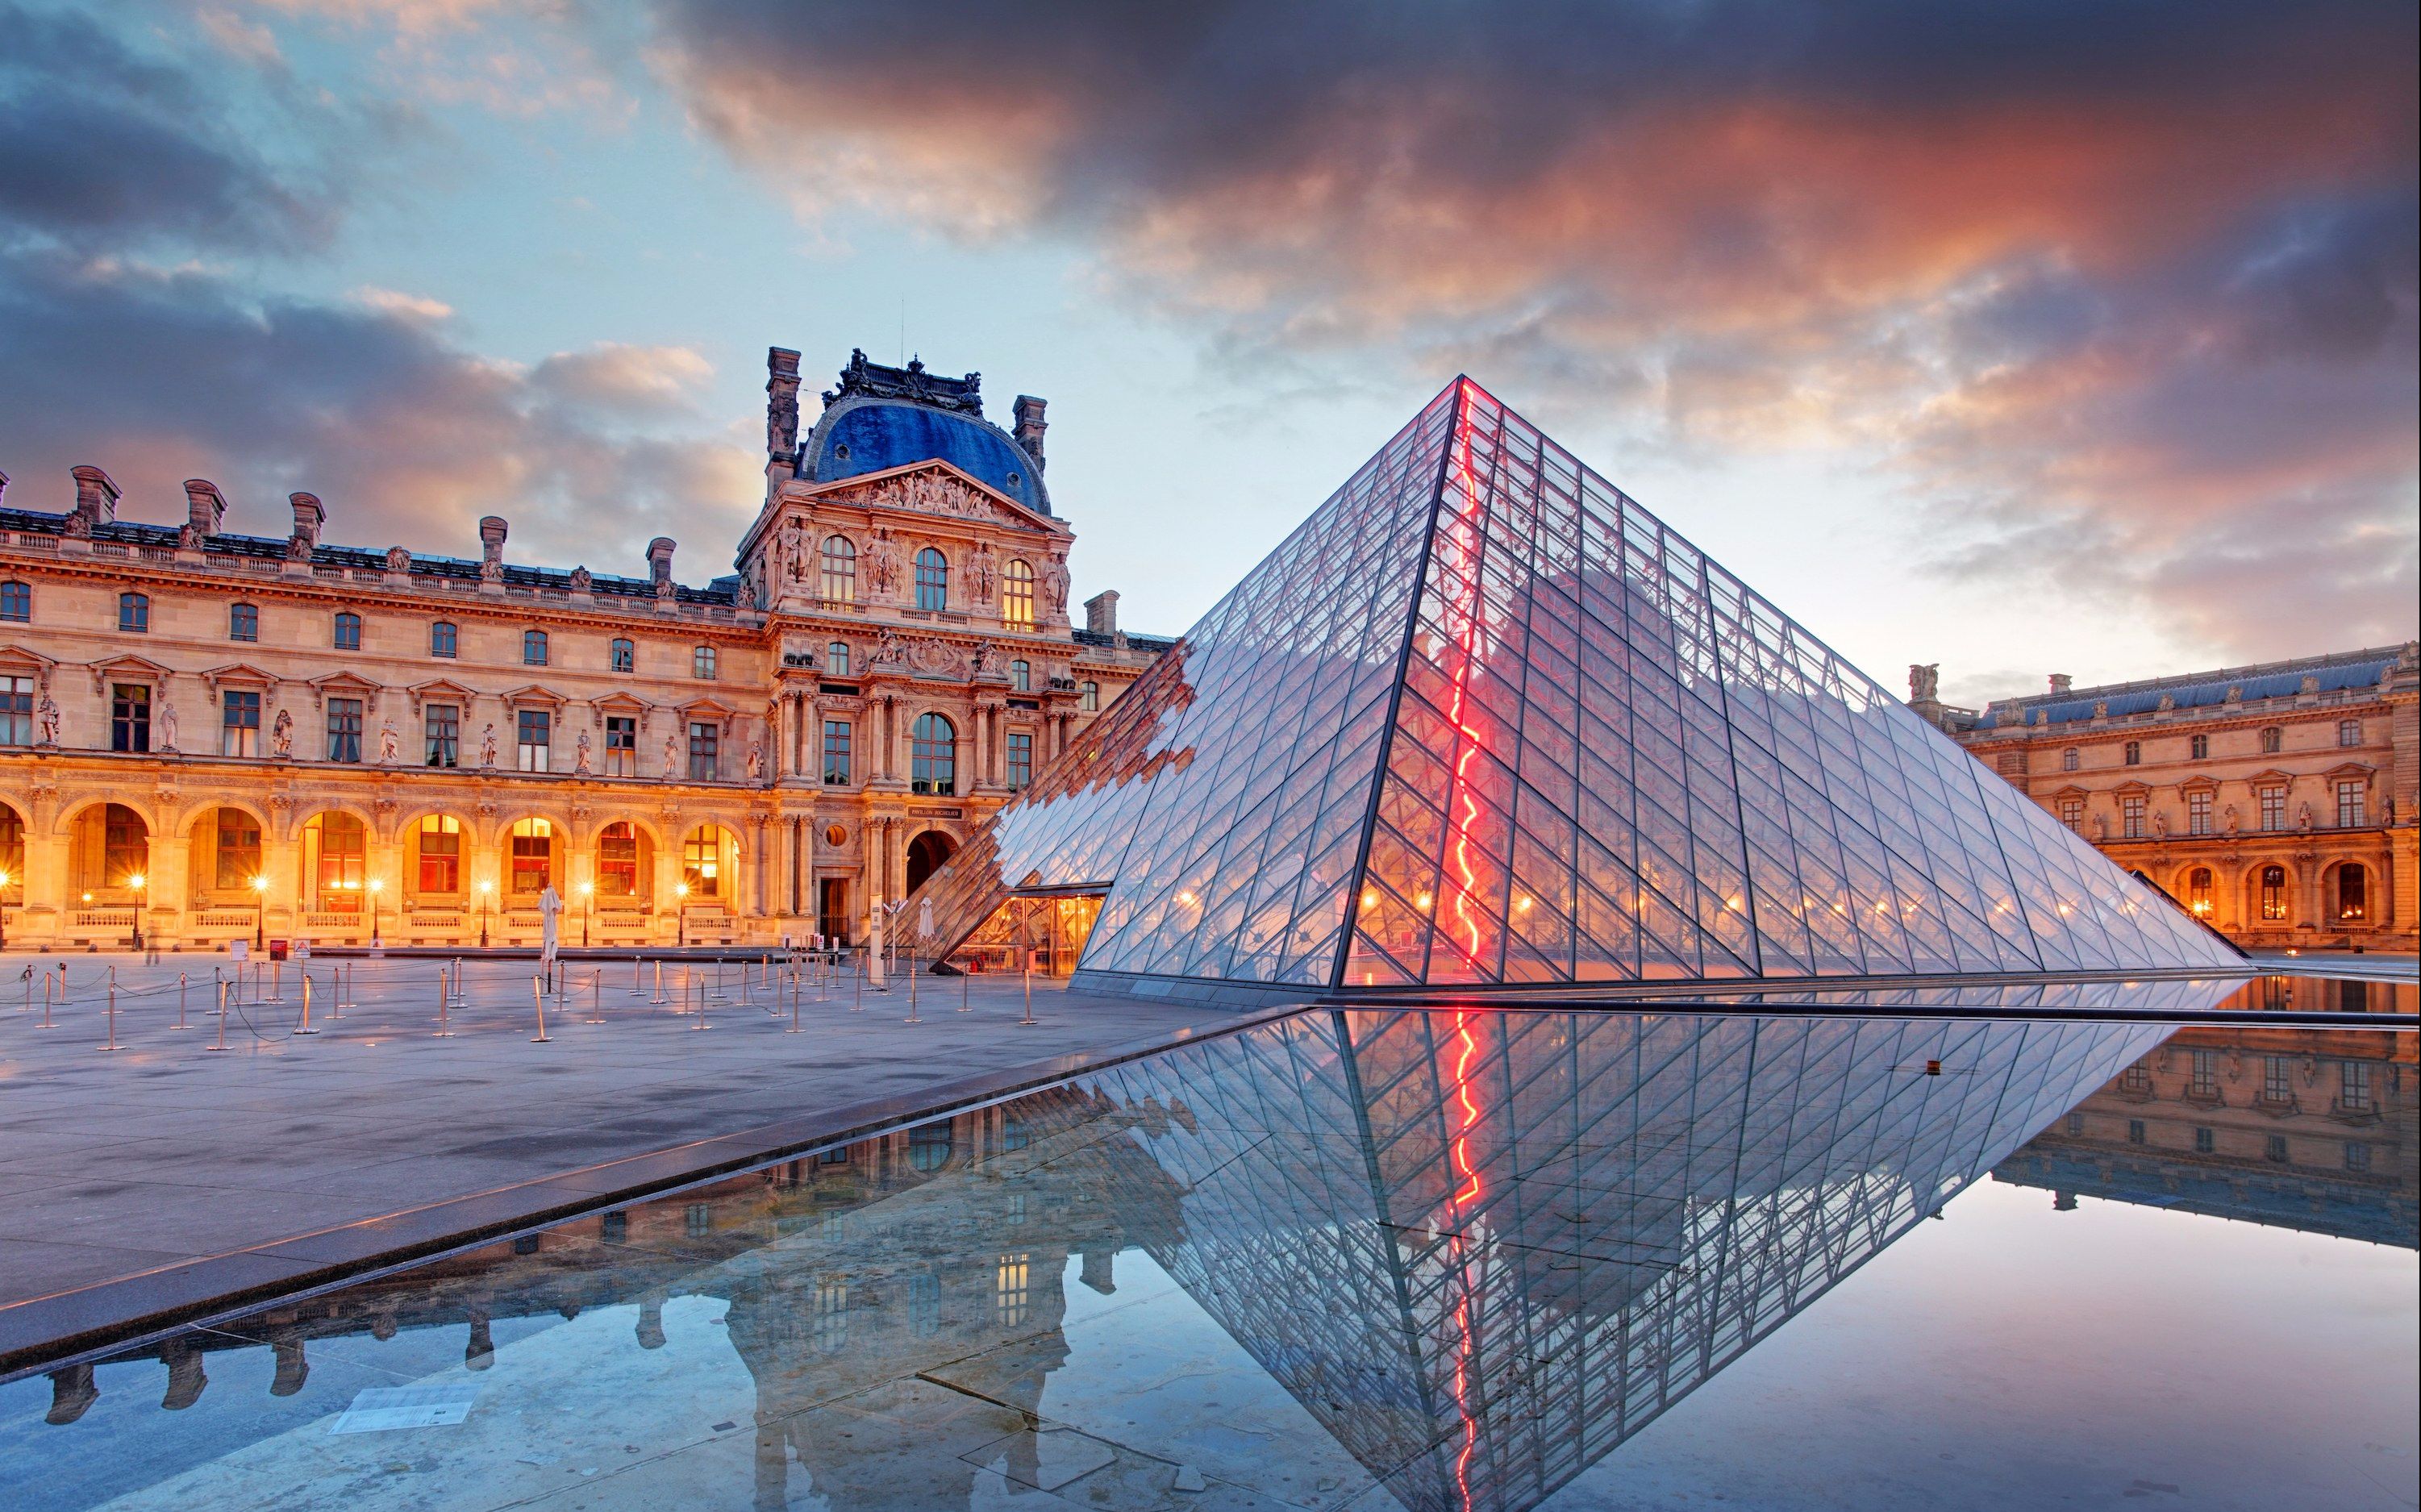 卢浮宫 - 巴黎景点 - 华侨城旅游网